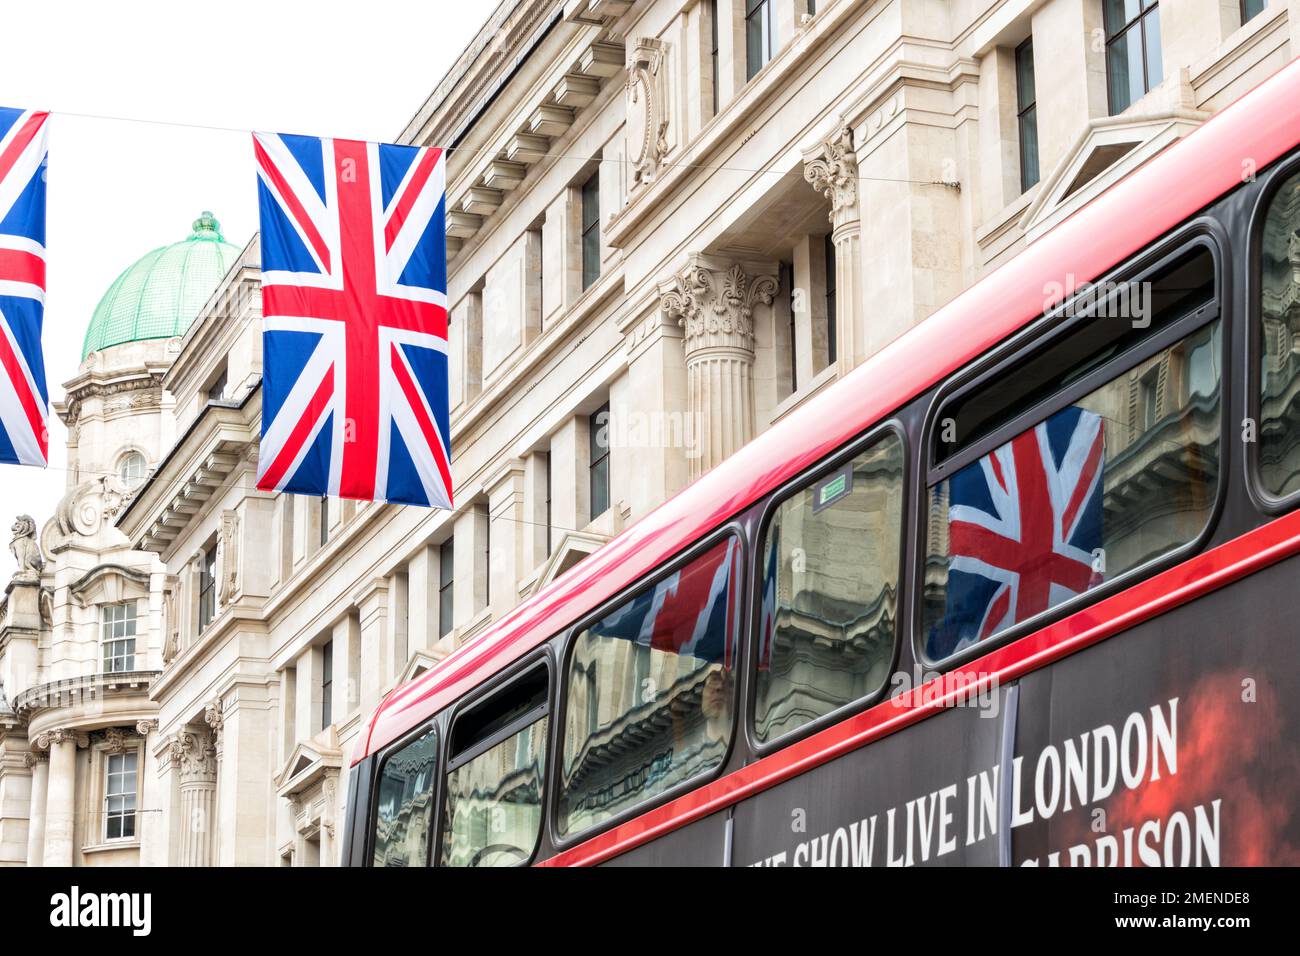 Les drapeaux de l'Union Jack se reflètent dans le bus rouge de Londres sur Regent Street, Londres, Angleterre Banque D'Images